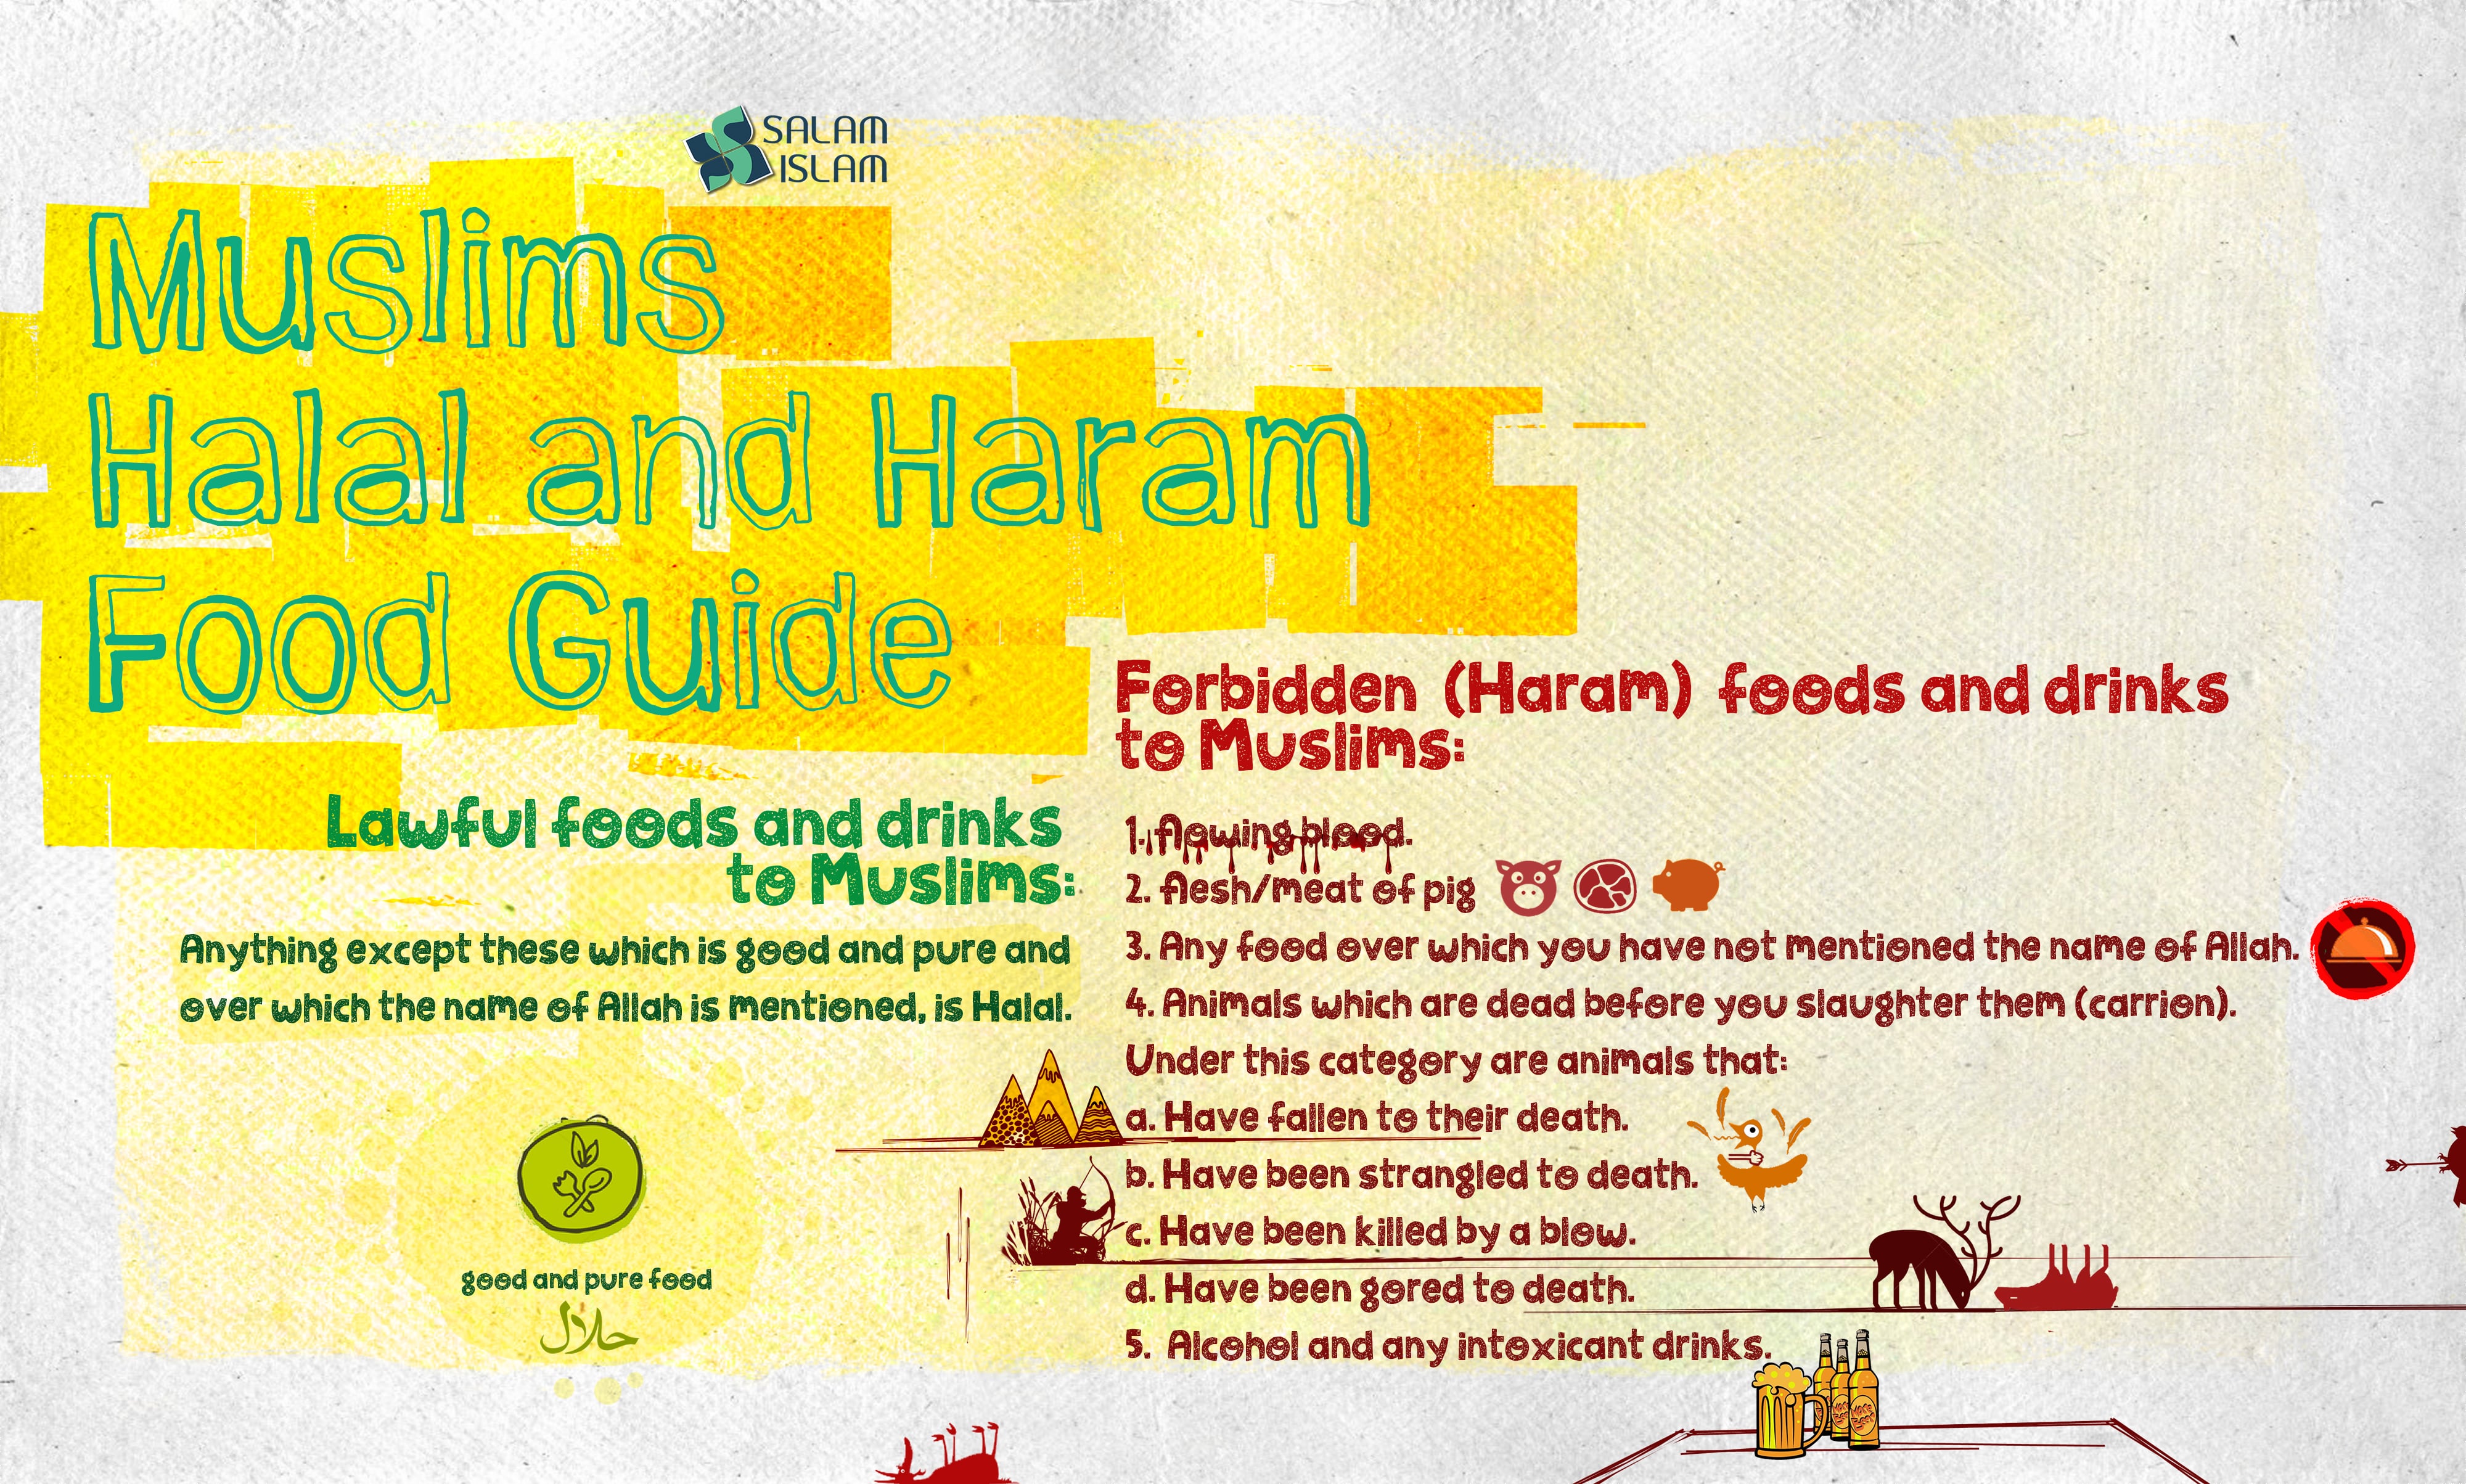 Muslim's Halal and Haram Food Guide | Salamislam